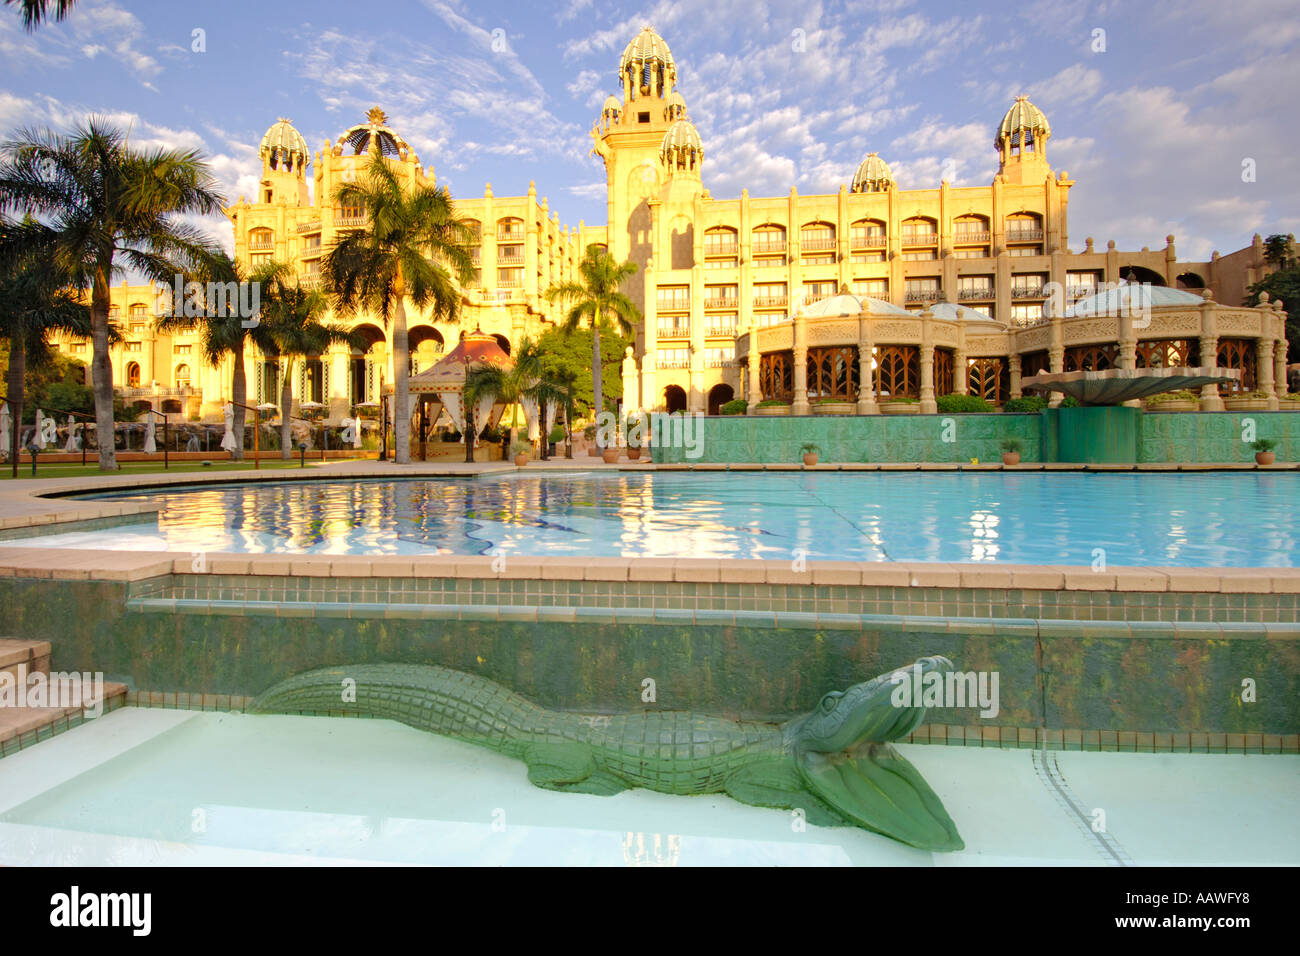 L'aube d'une vue sur la piscine à l'extérieur du palais de la Cité perdue dans l'hôtel Sun City Resort en Afrique du Sud. Banque D'Images